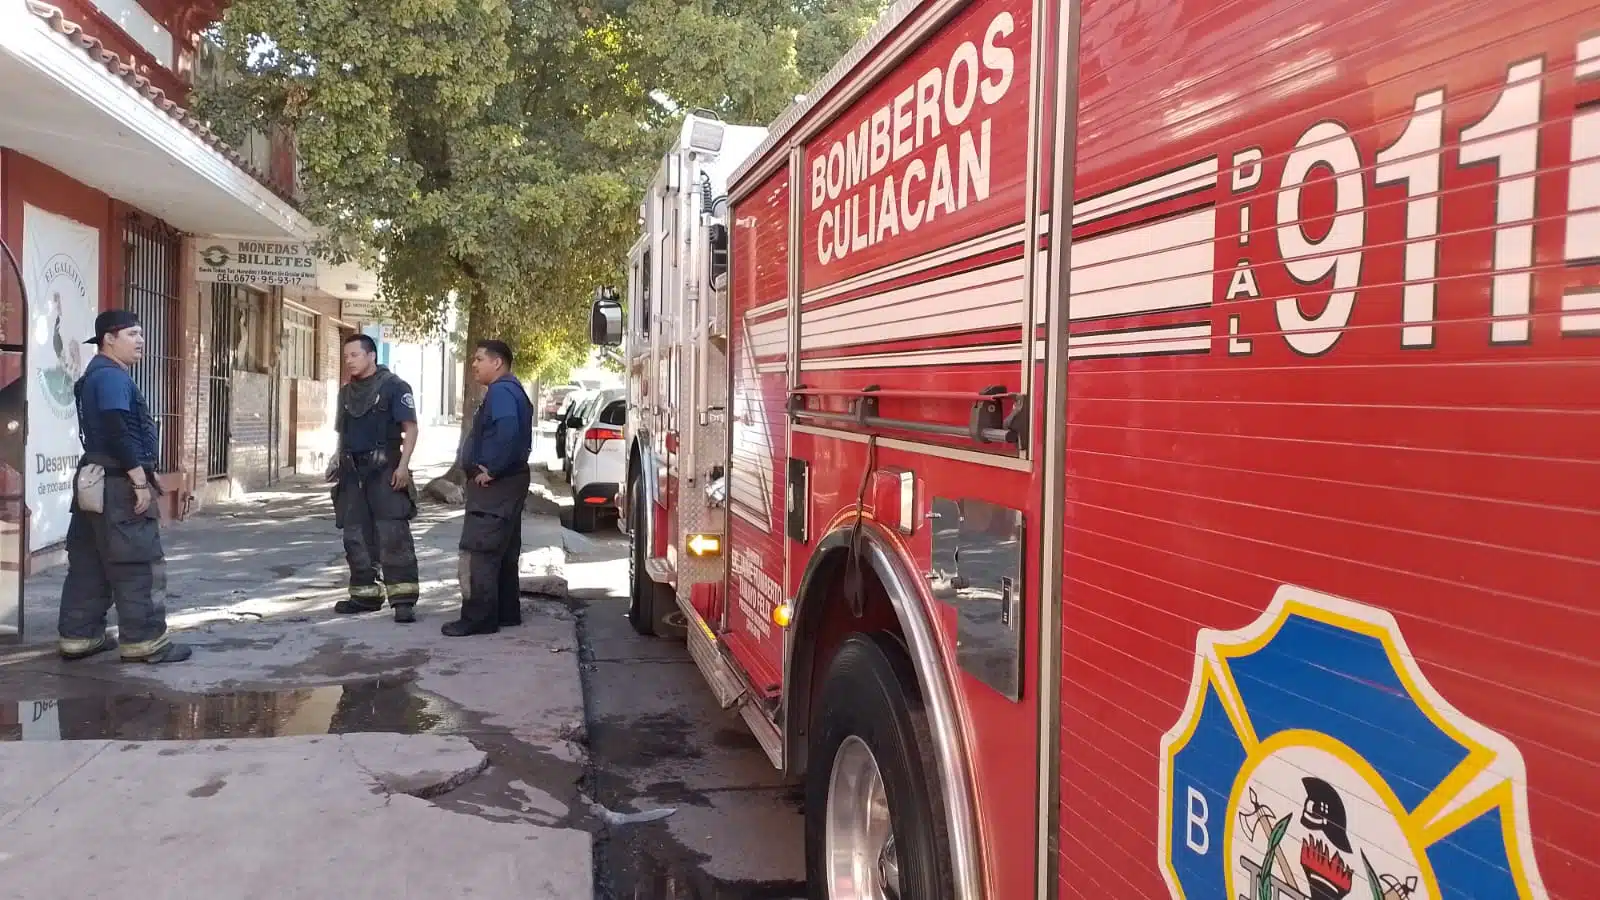 ¡Todos afuera! Desalojan restaurante de Culiacán tras conato de incendio